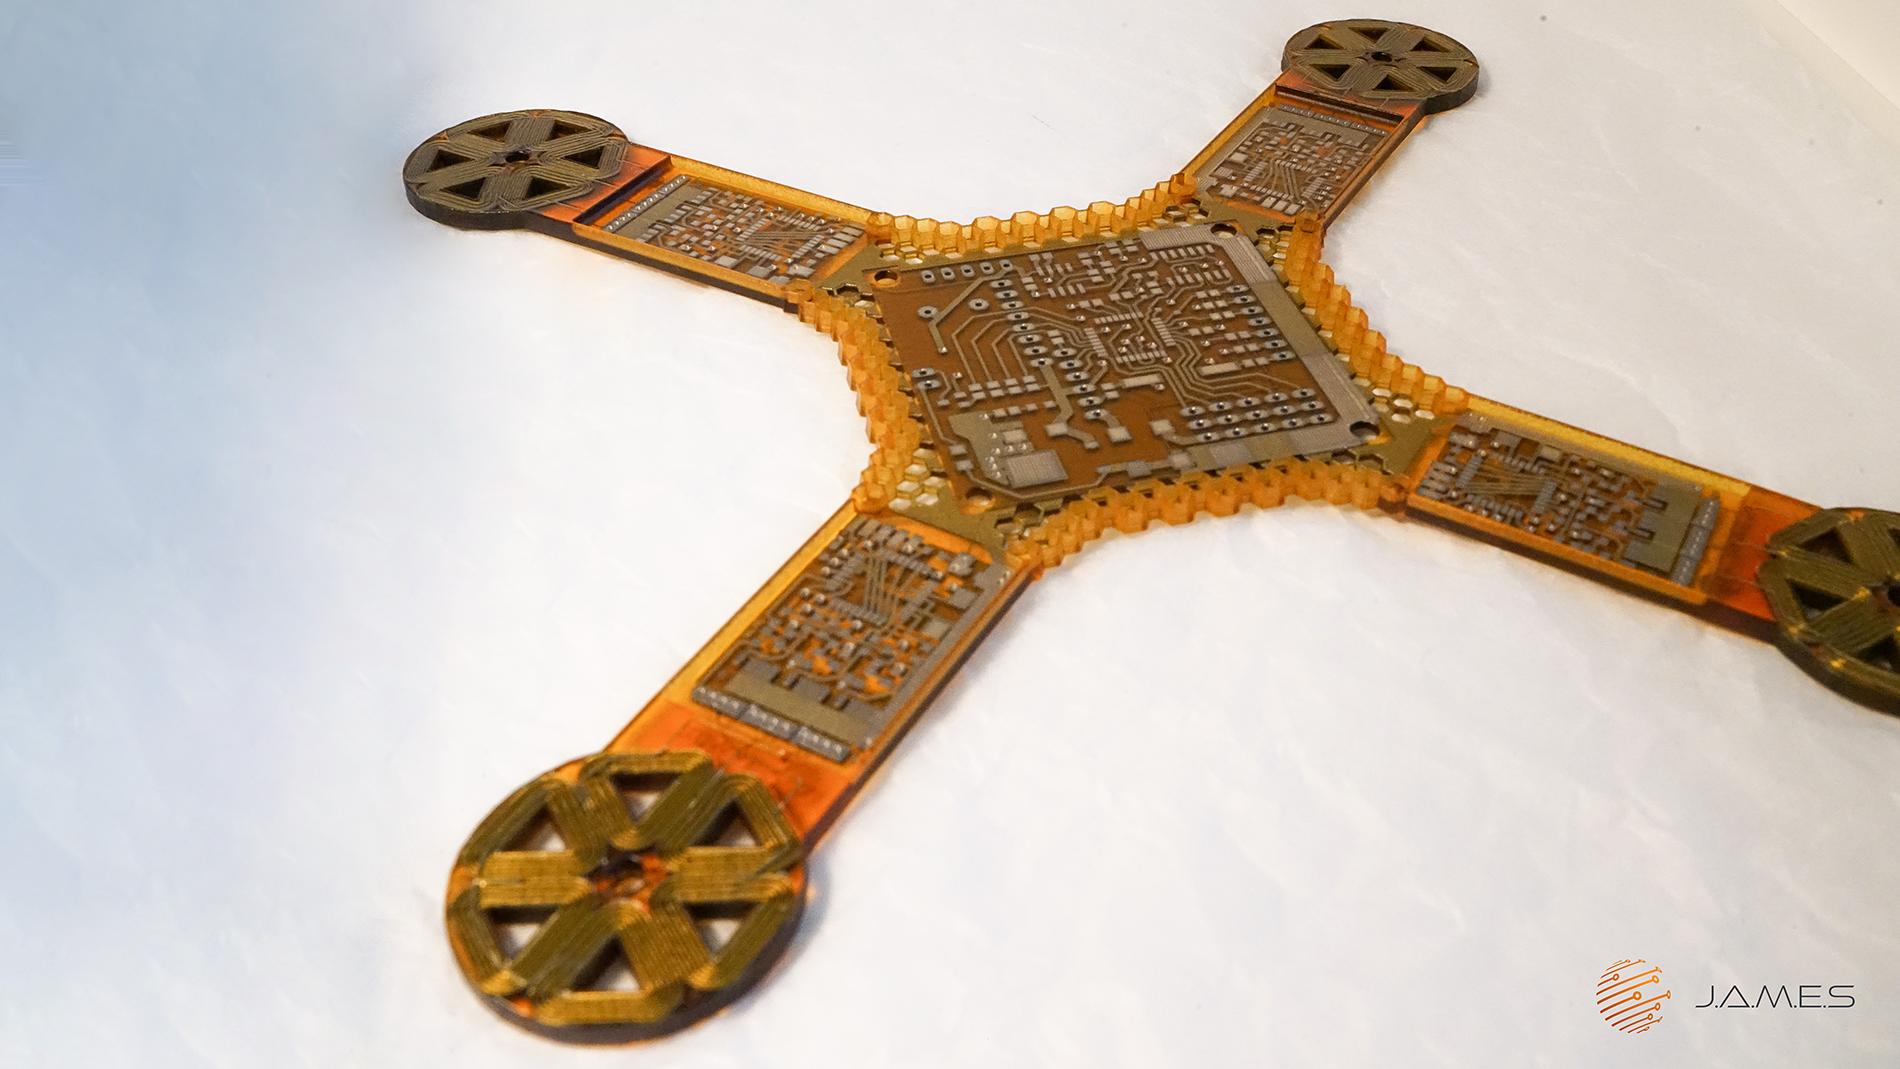 Zukunftsweisend für den Elektronik-3D-Druck: das elektronische Grundgerüst einer Drohne inklusive sämtlicher Leiterbahnen und der Spulen für die Motoren. Bild: J.A.M.E.S.